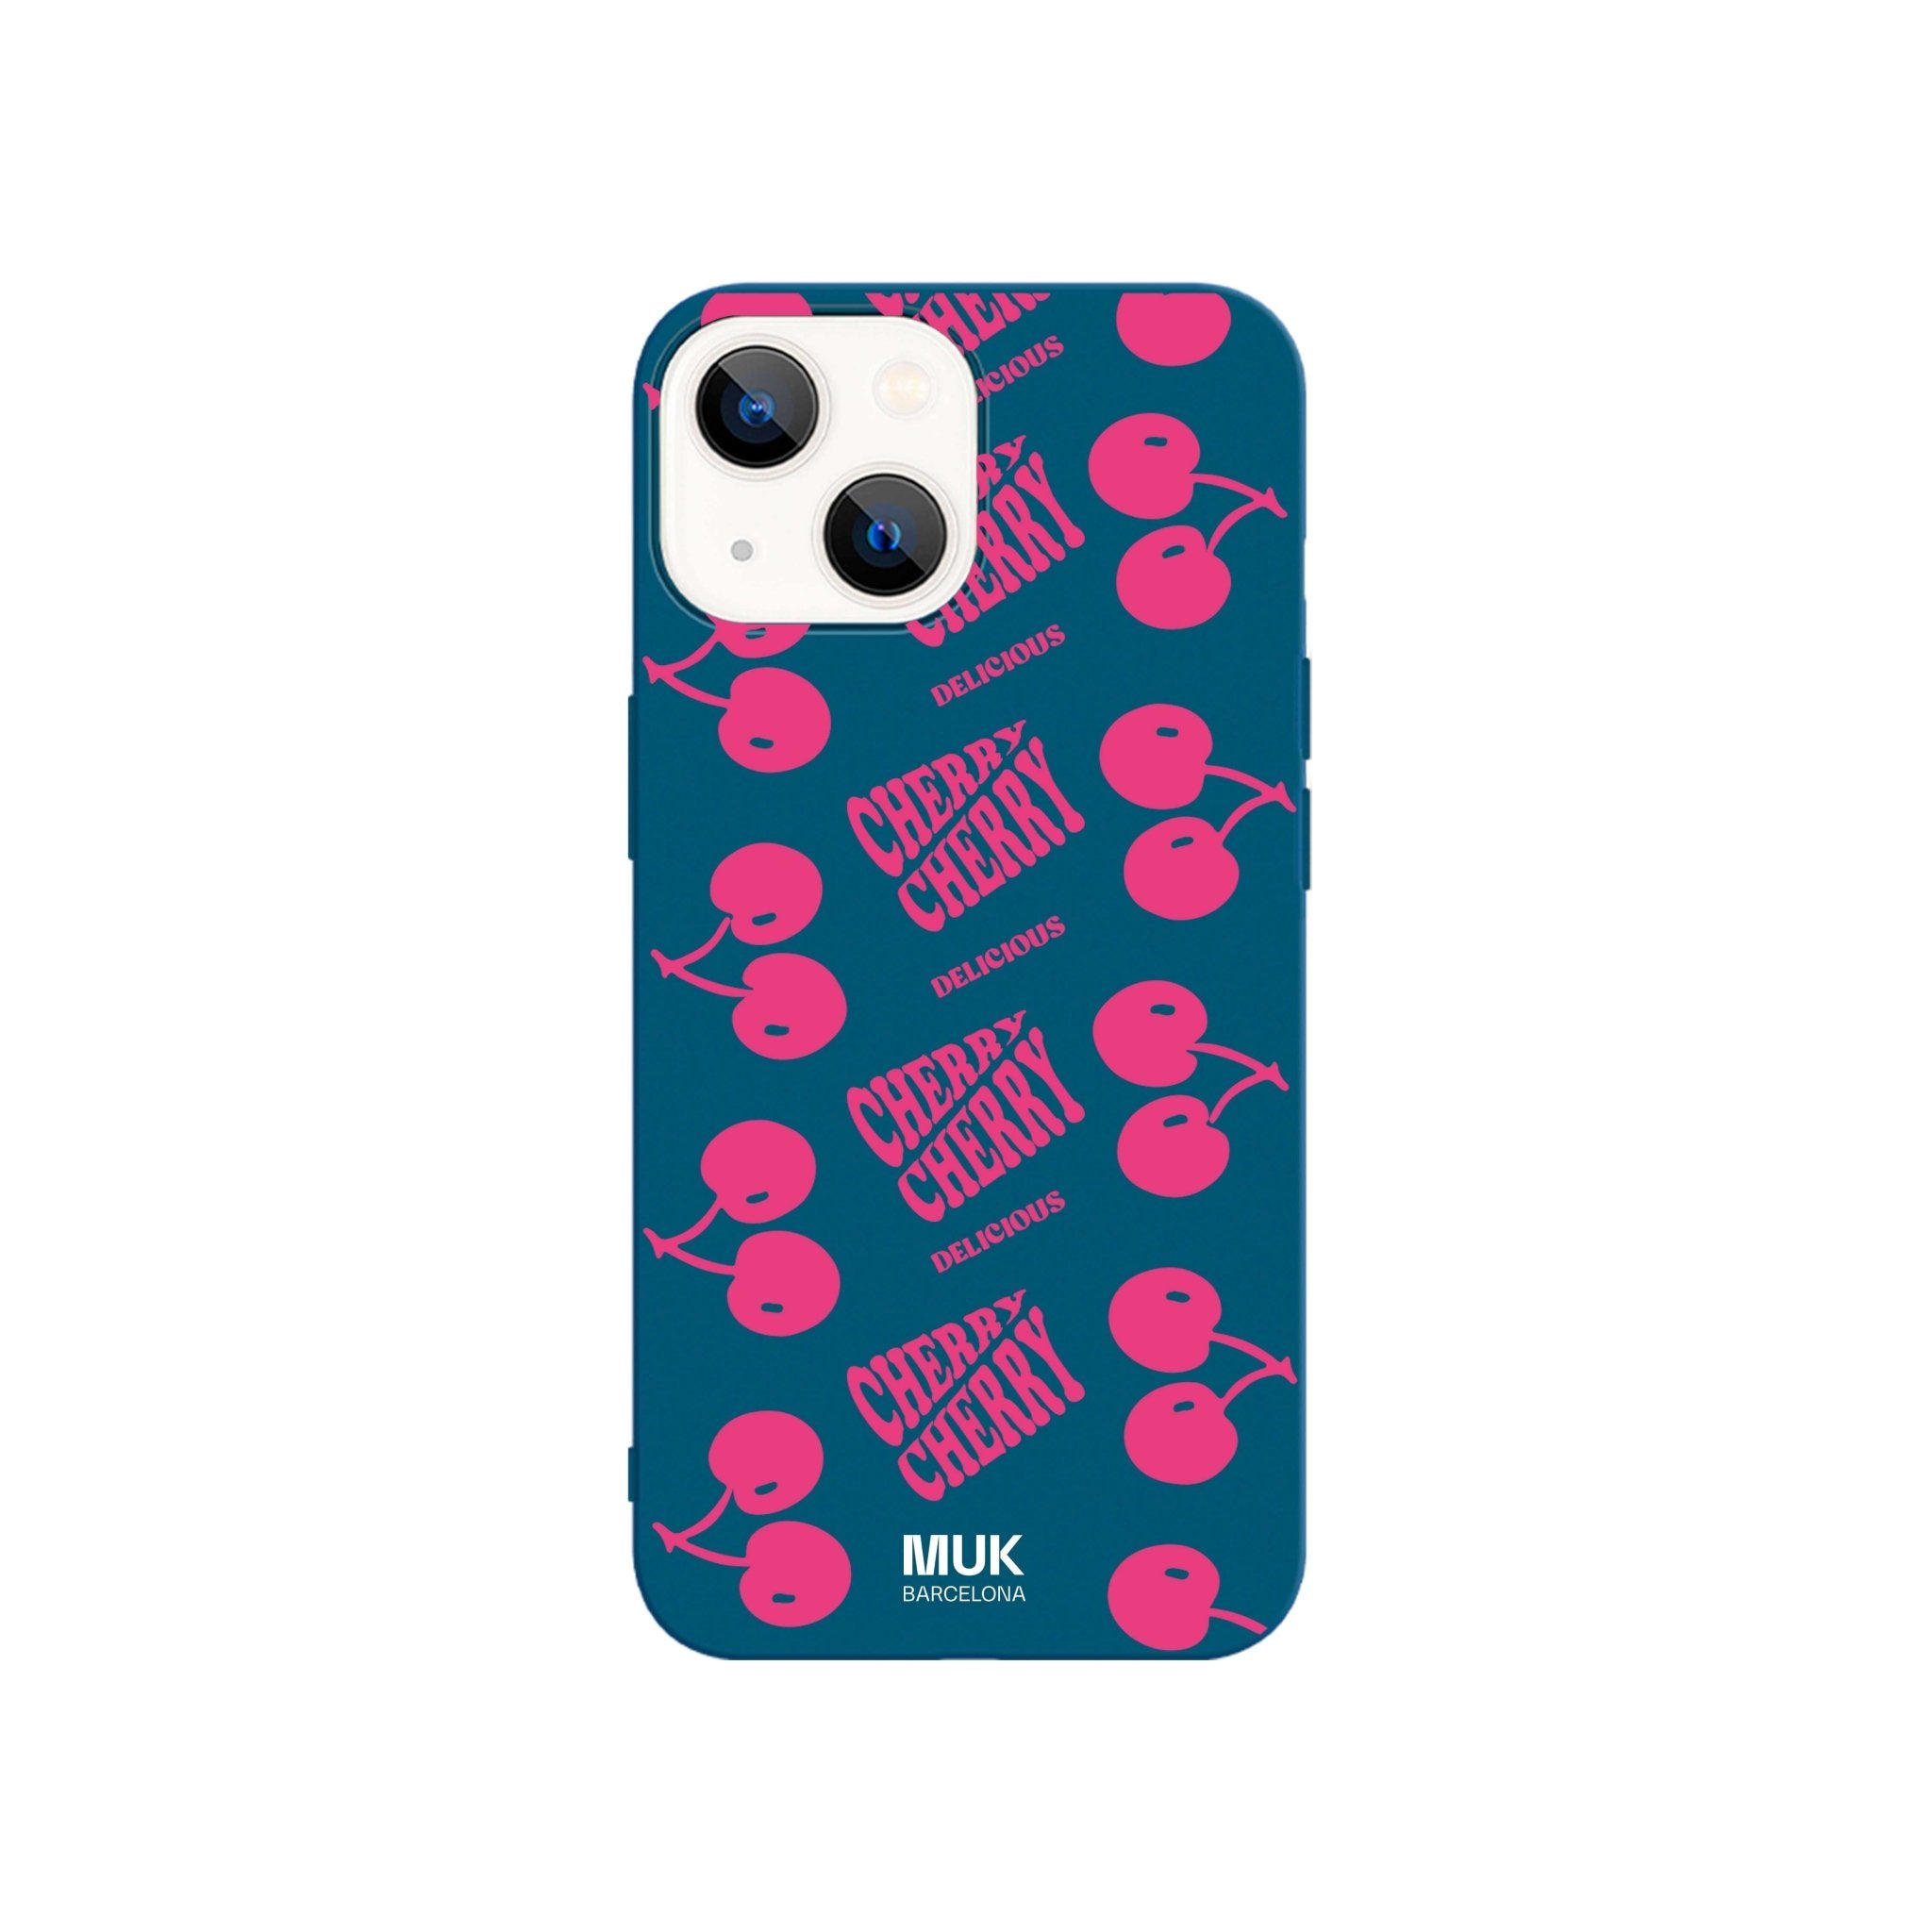 Funda de móvil TPU azul con diseño de cerezas y frase "Cherry Delicious".
